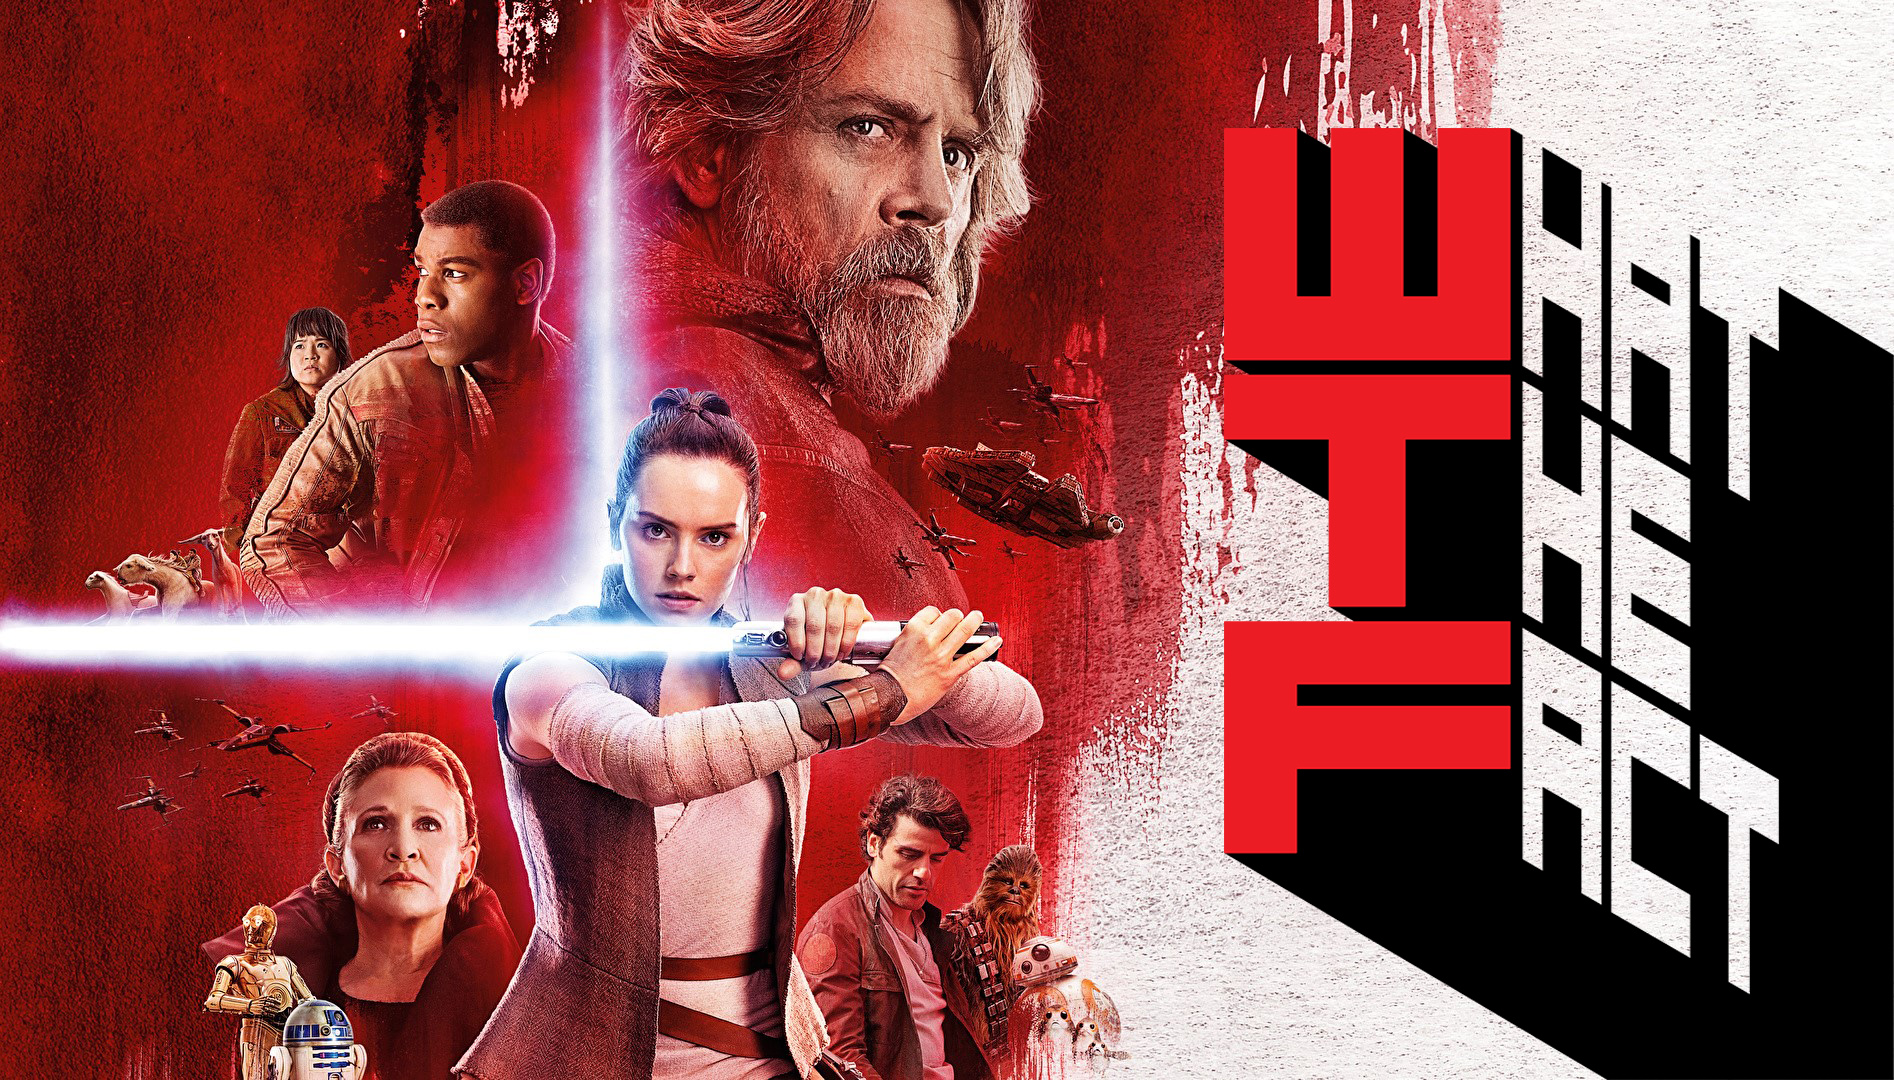 10 อันดับ Box Office (22-24 ธ.ค. 2017) : The Last Jedi ครองแชมป์ 2 สัปดาห์ซ้อน ทำไปกว่า 700 ล้านเหรียญทั่วโลก